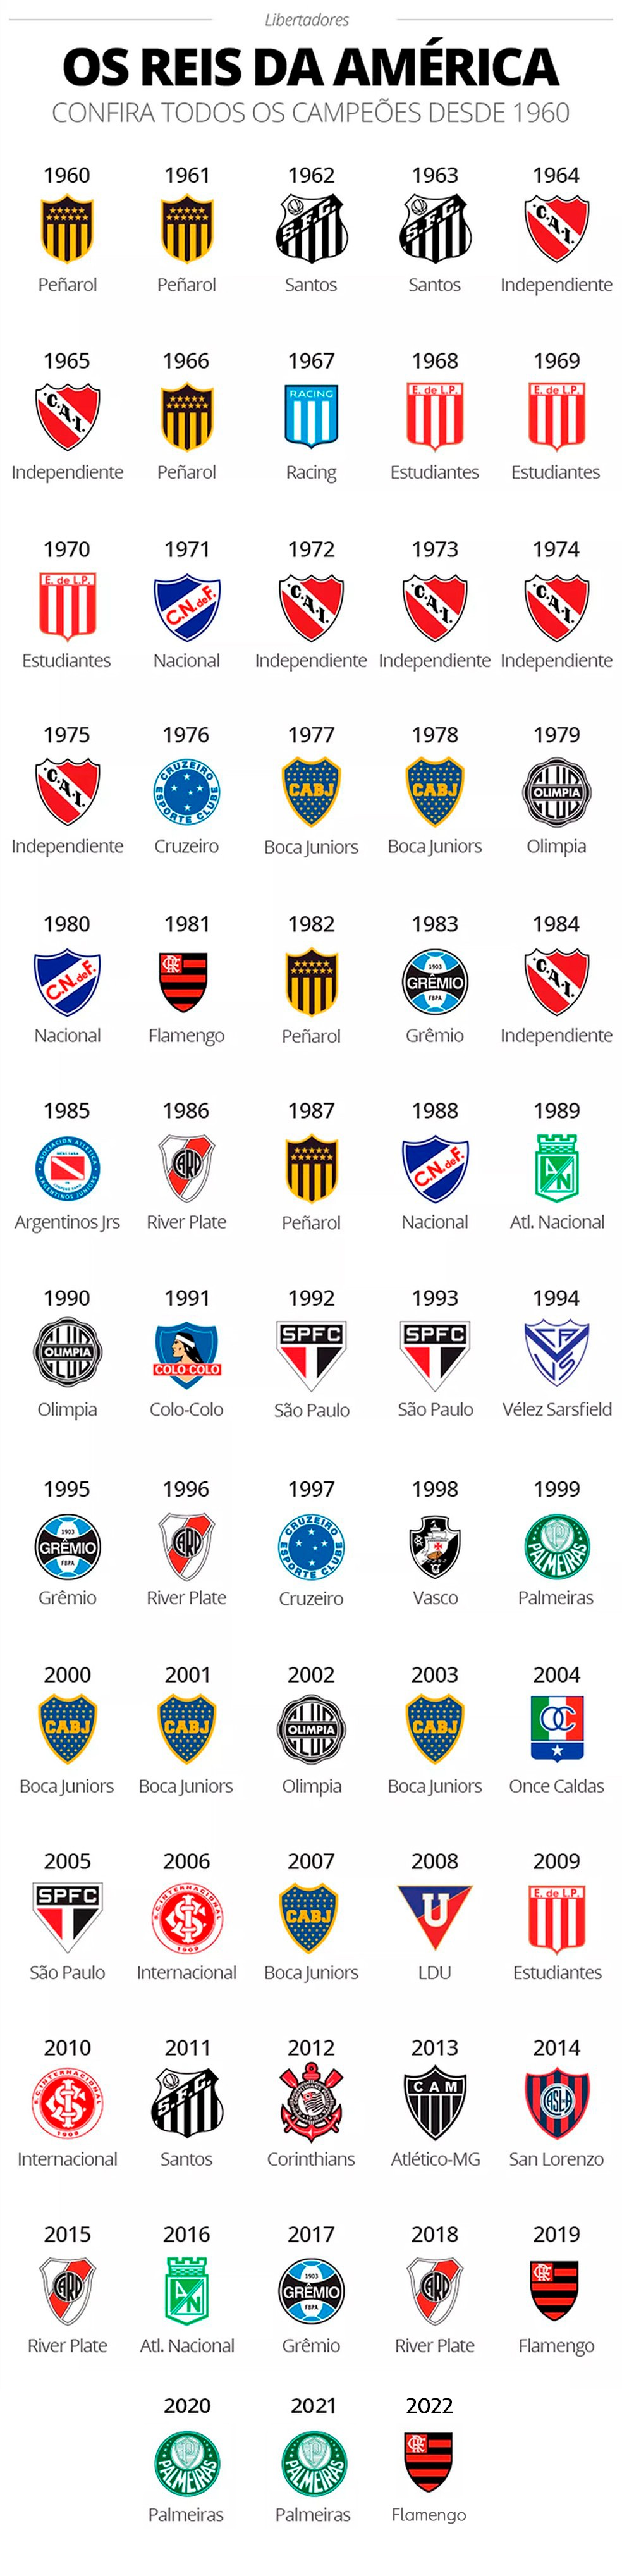 Qual time mais ganhou Libertadores?